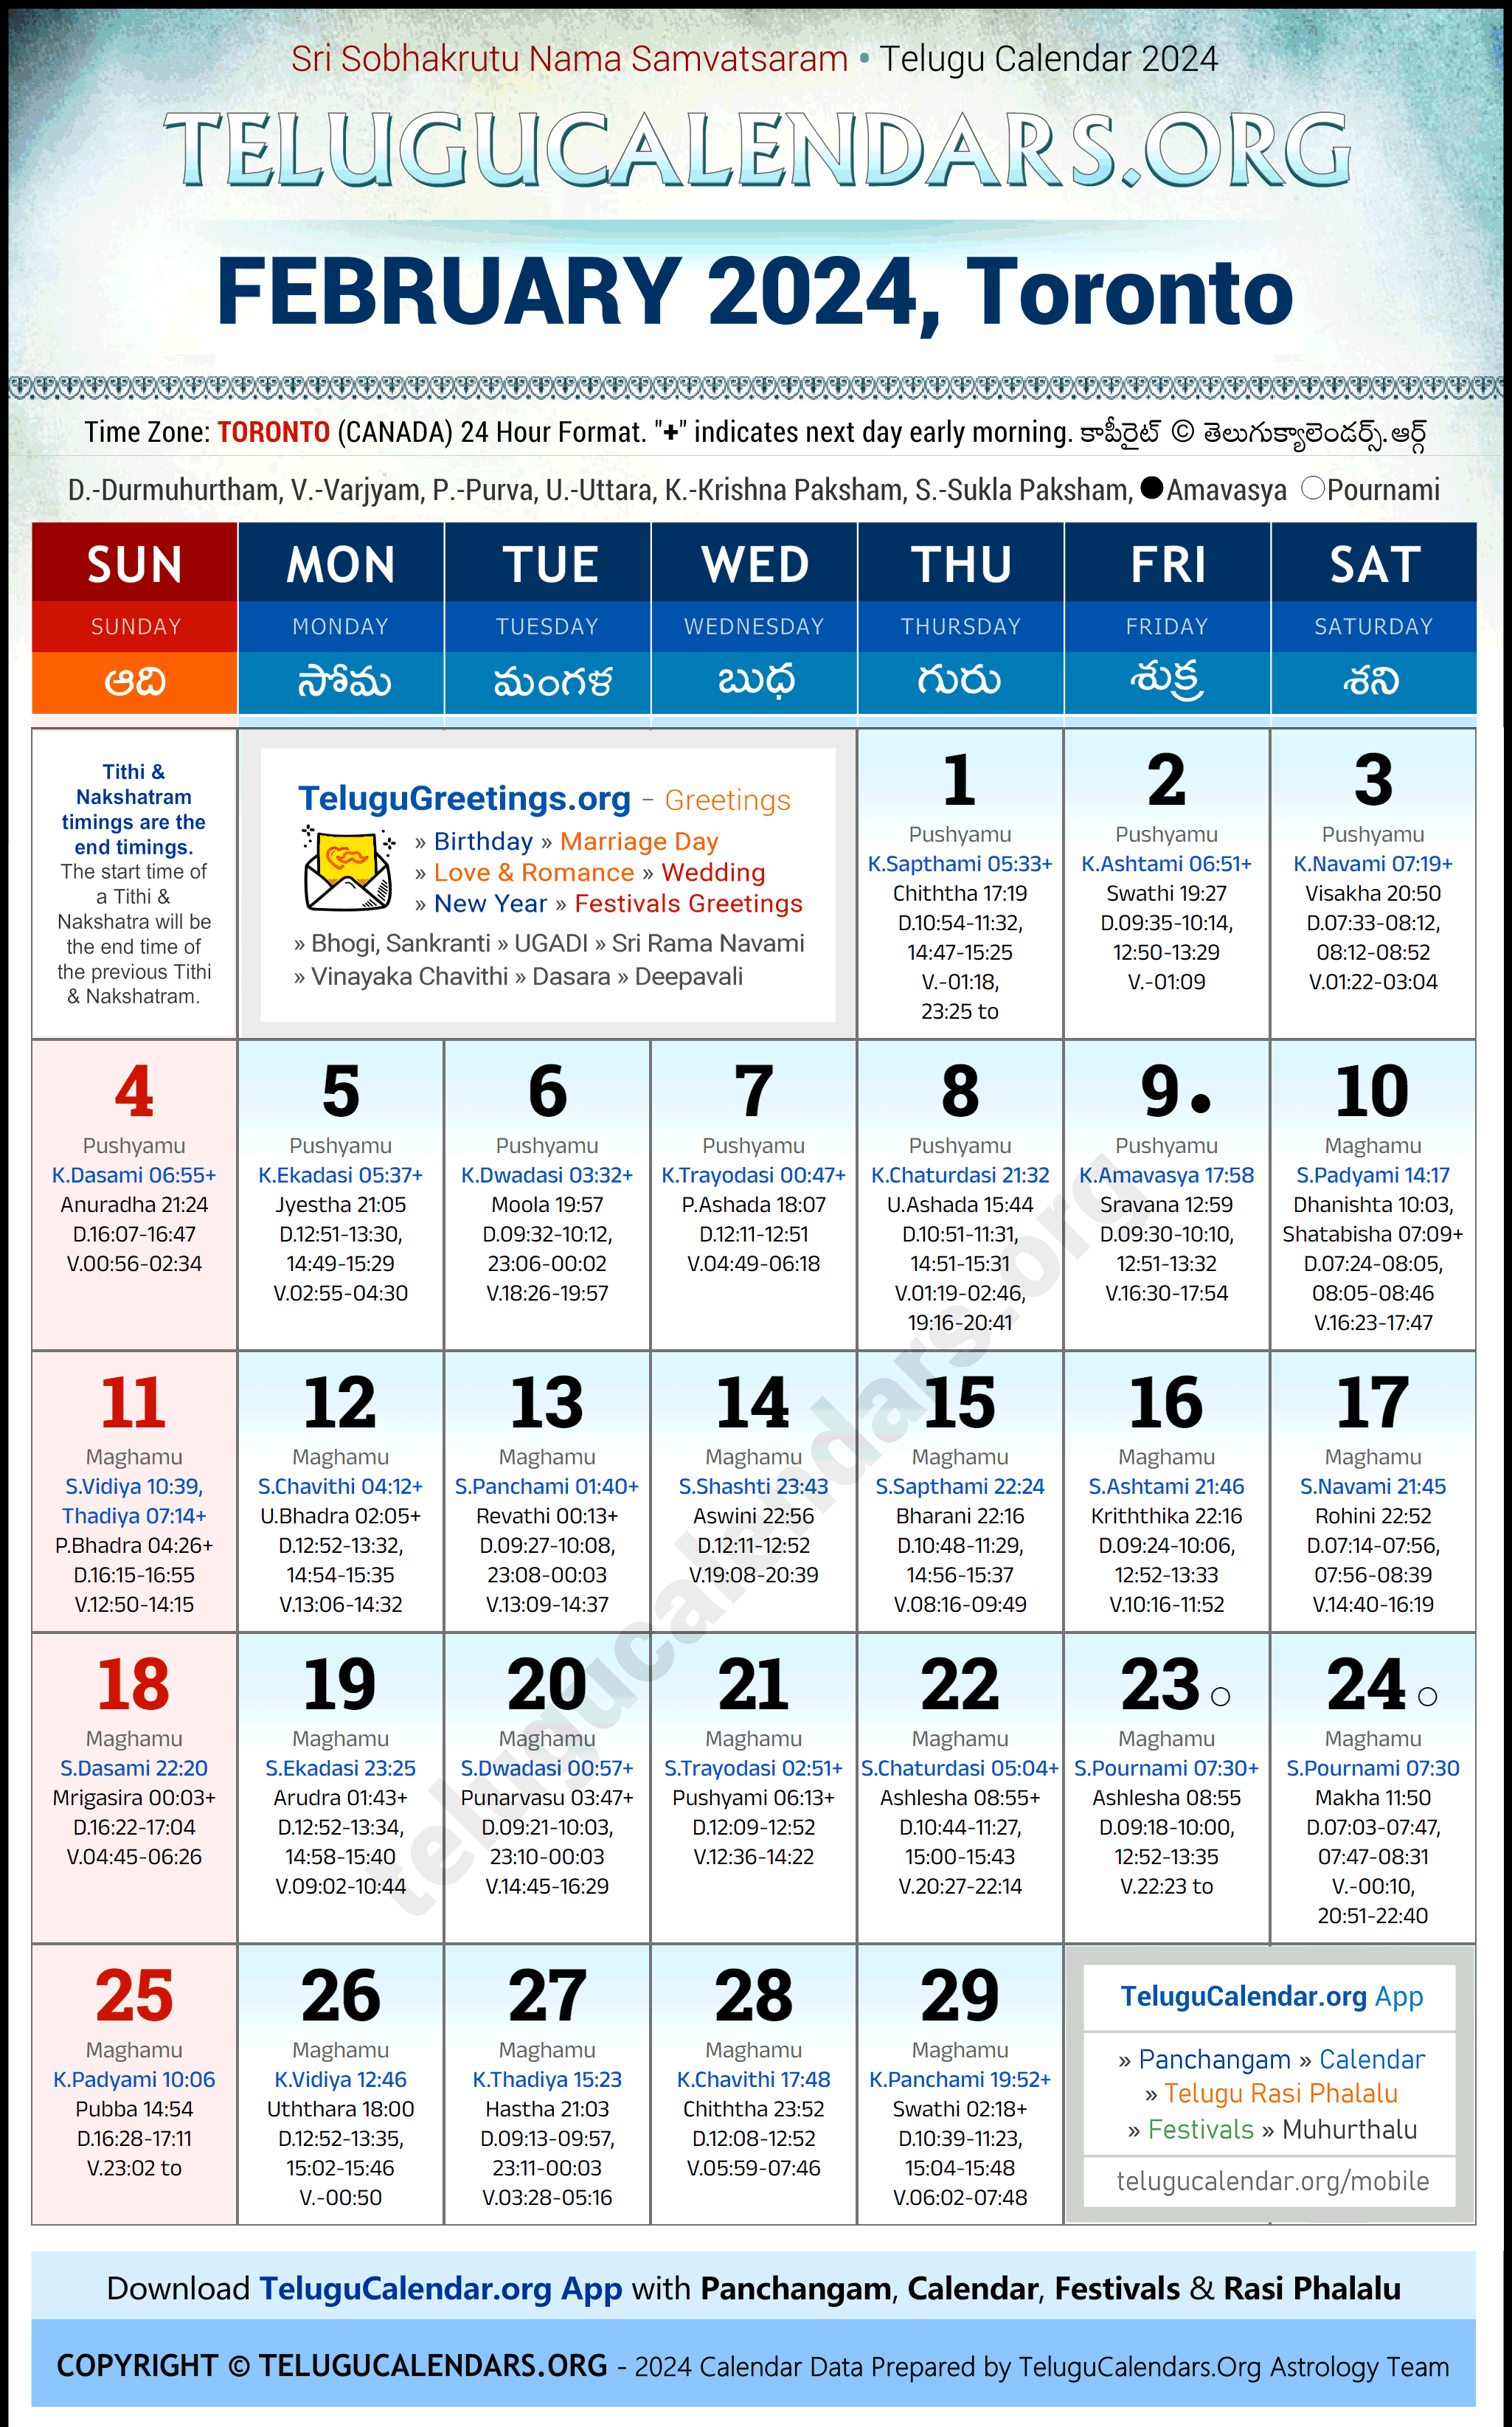 Telugu Calendar 2024 February Festivals for Toronto